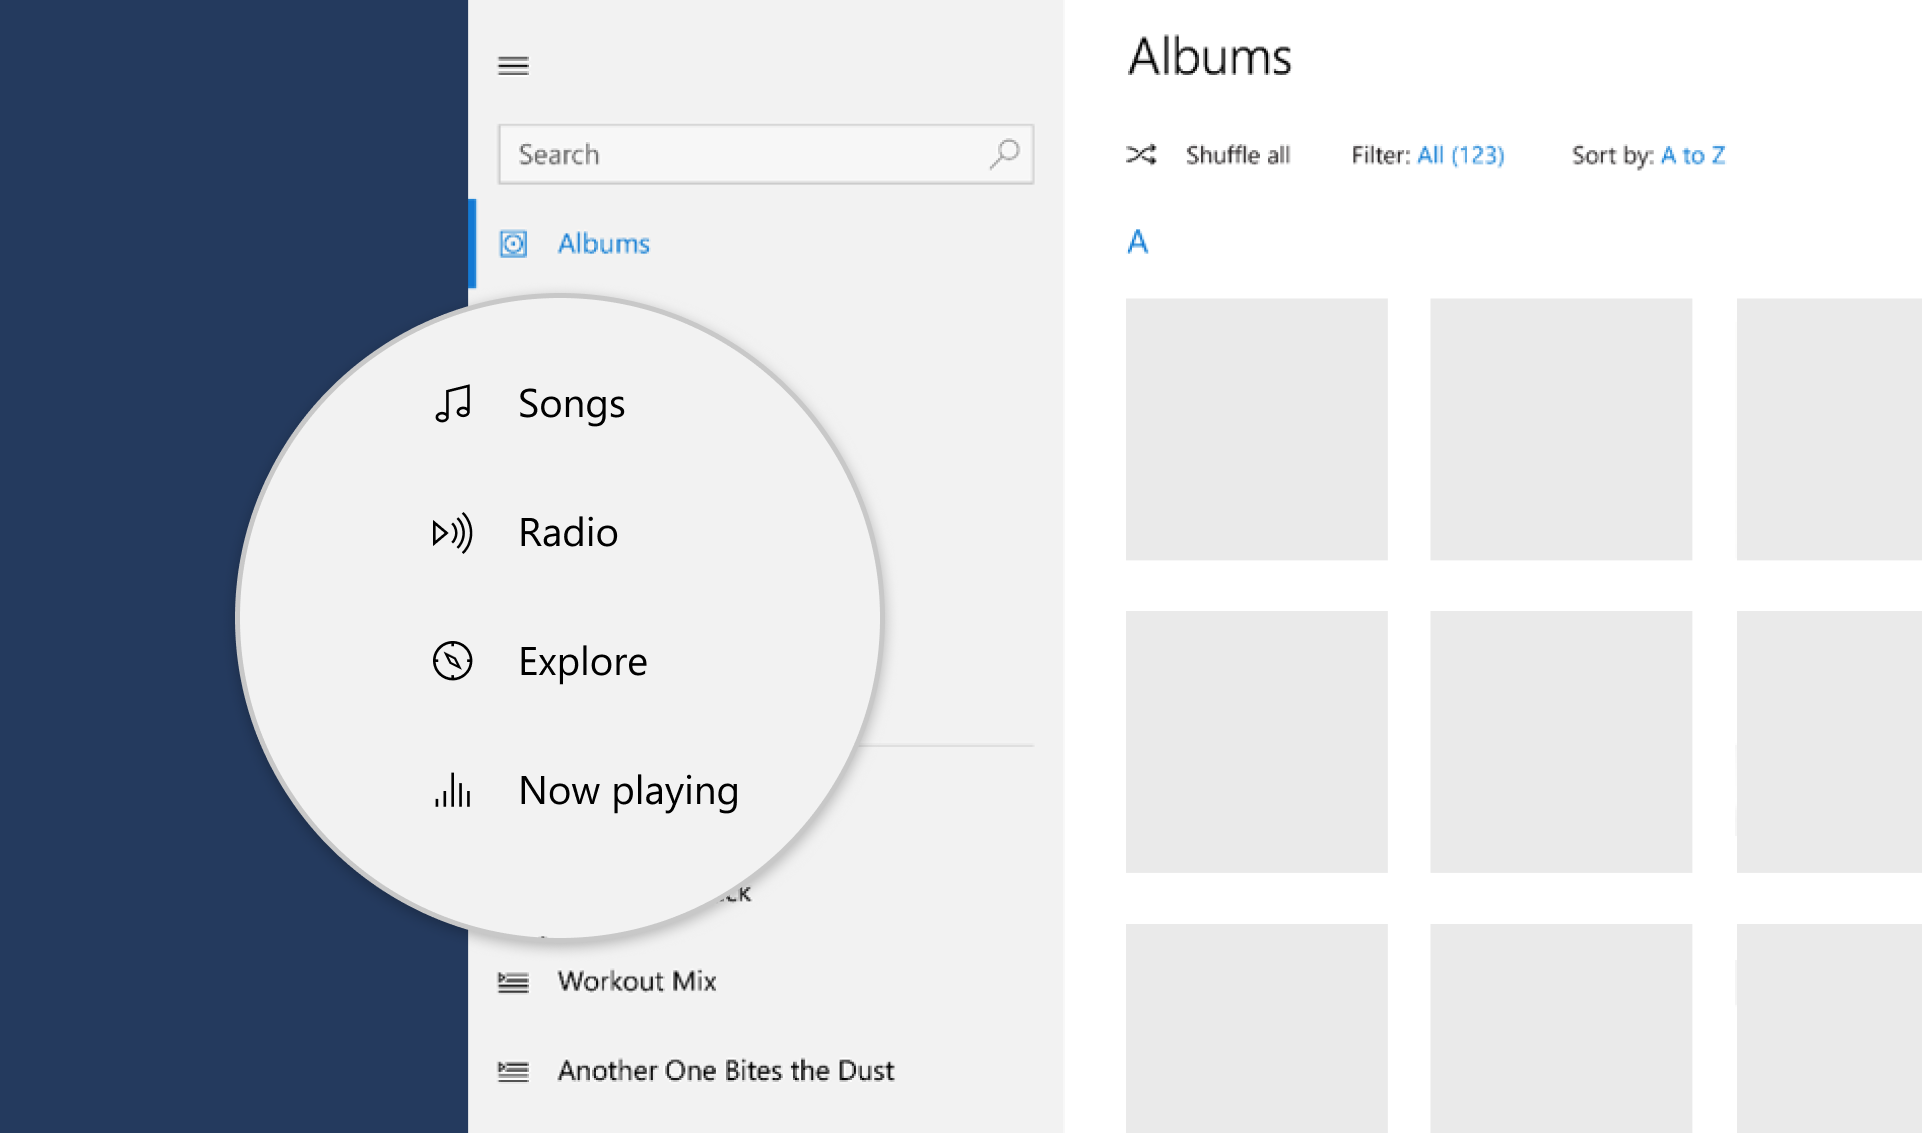 Captura de pantalla de iconos en una aplicación de música.